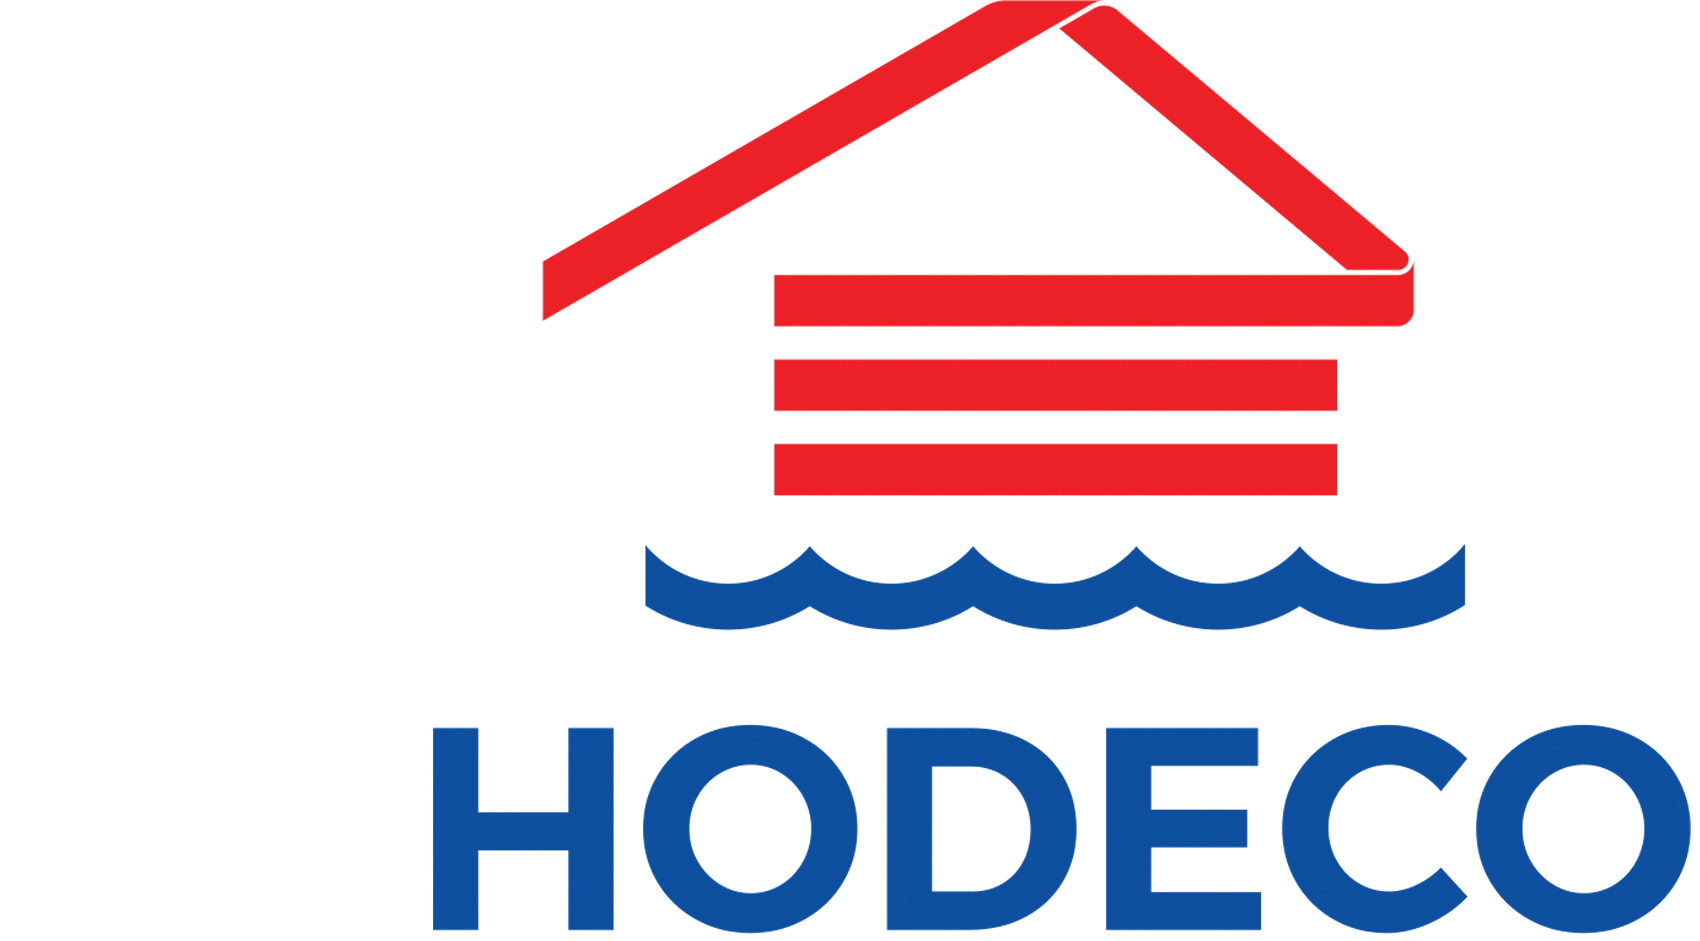 Hodeco phát hành 30 tỷ đồng trái phiếu để đầu tư cho dự án The Light City.